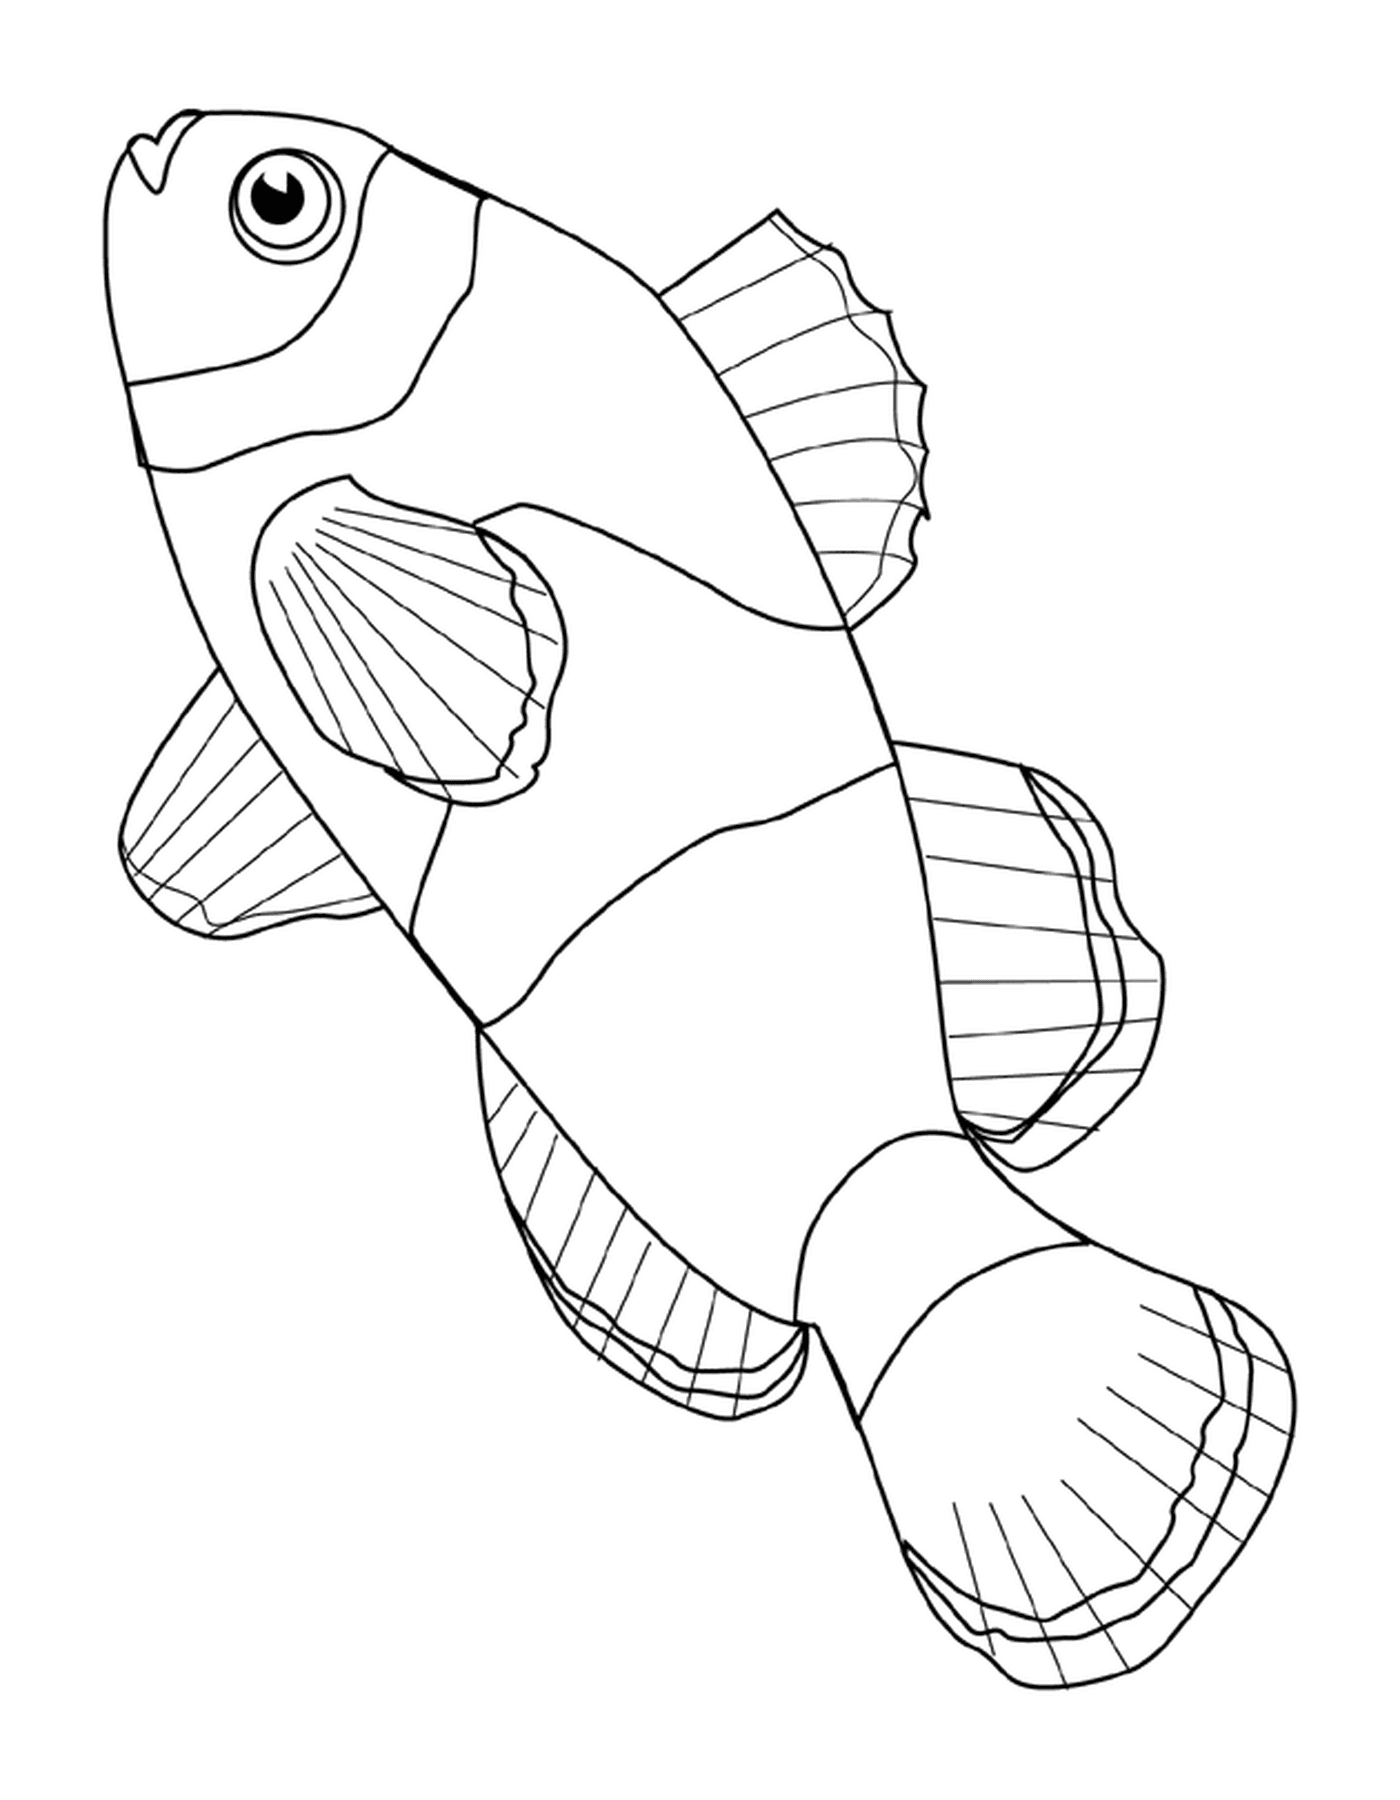  Клоунская рыба с скорлупой 